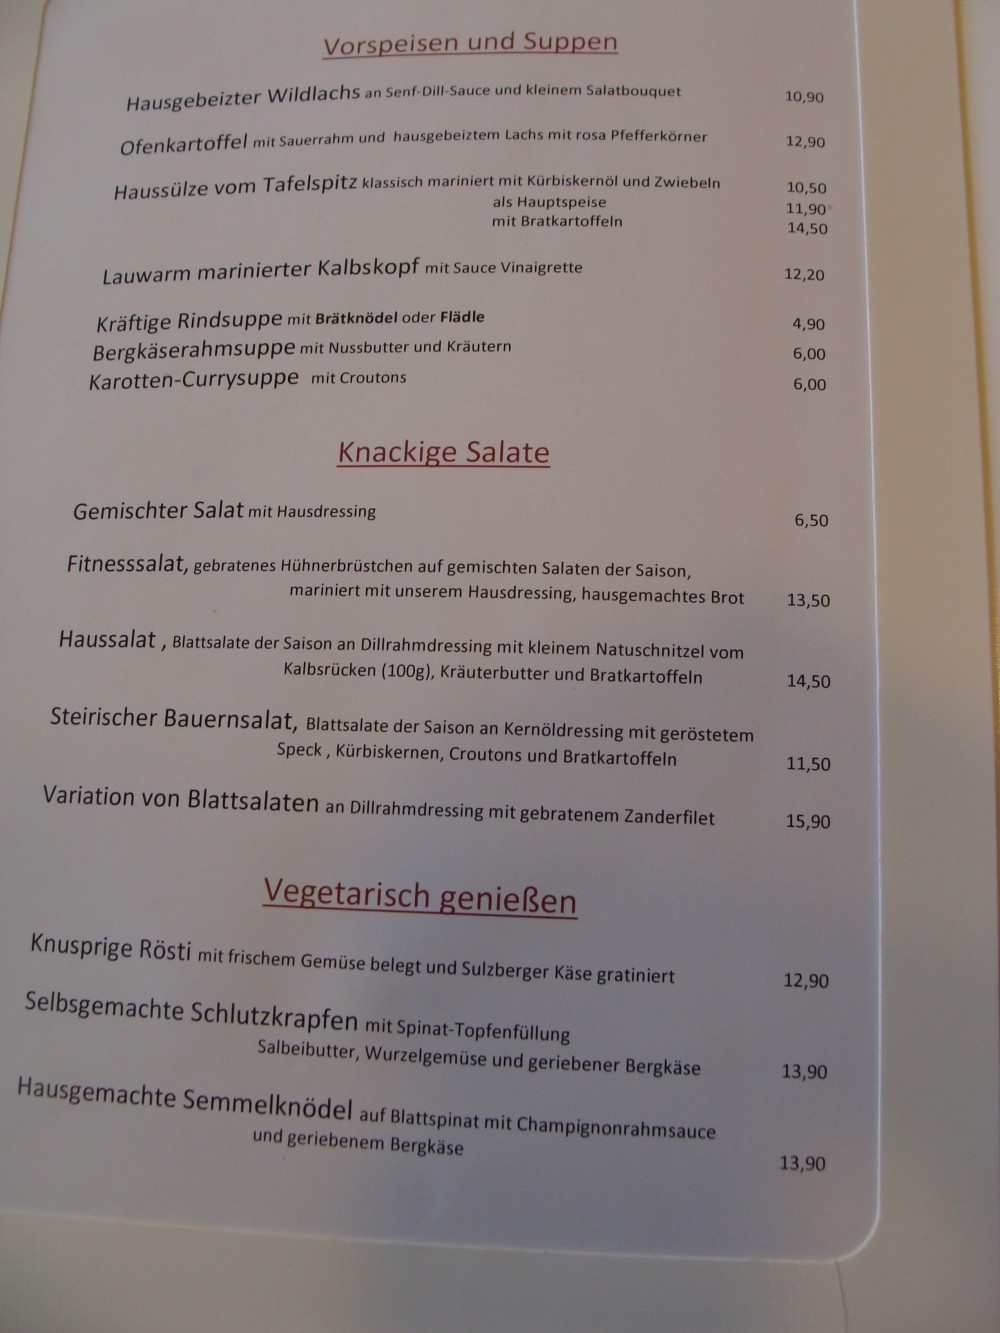 Vorspeisen, Suppen, Salate und Vegatarisches. - Gasthof Alpenblick - Sulzberg